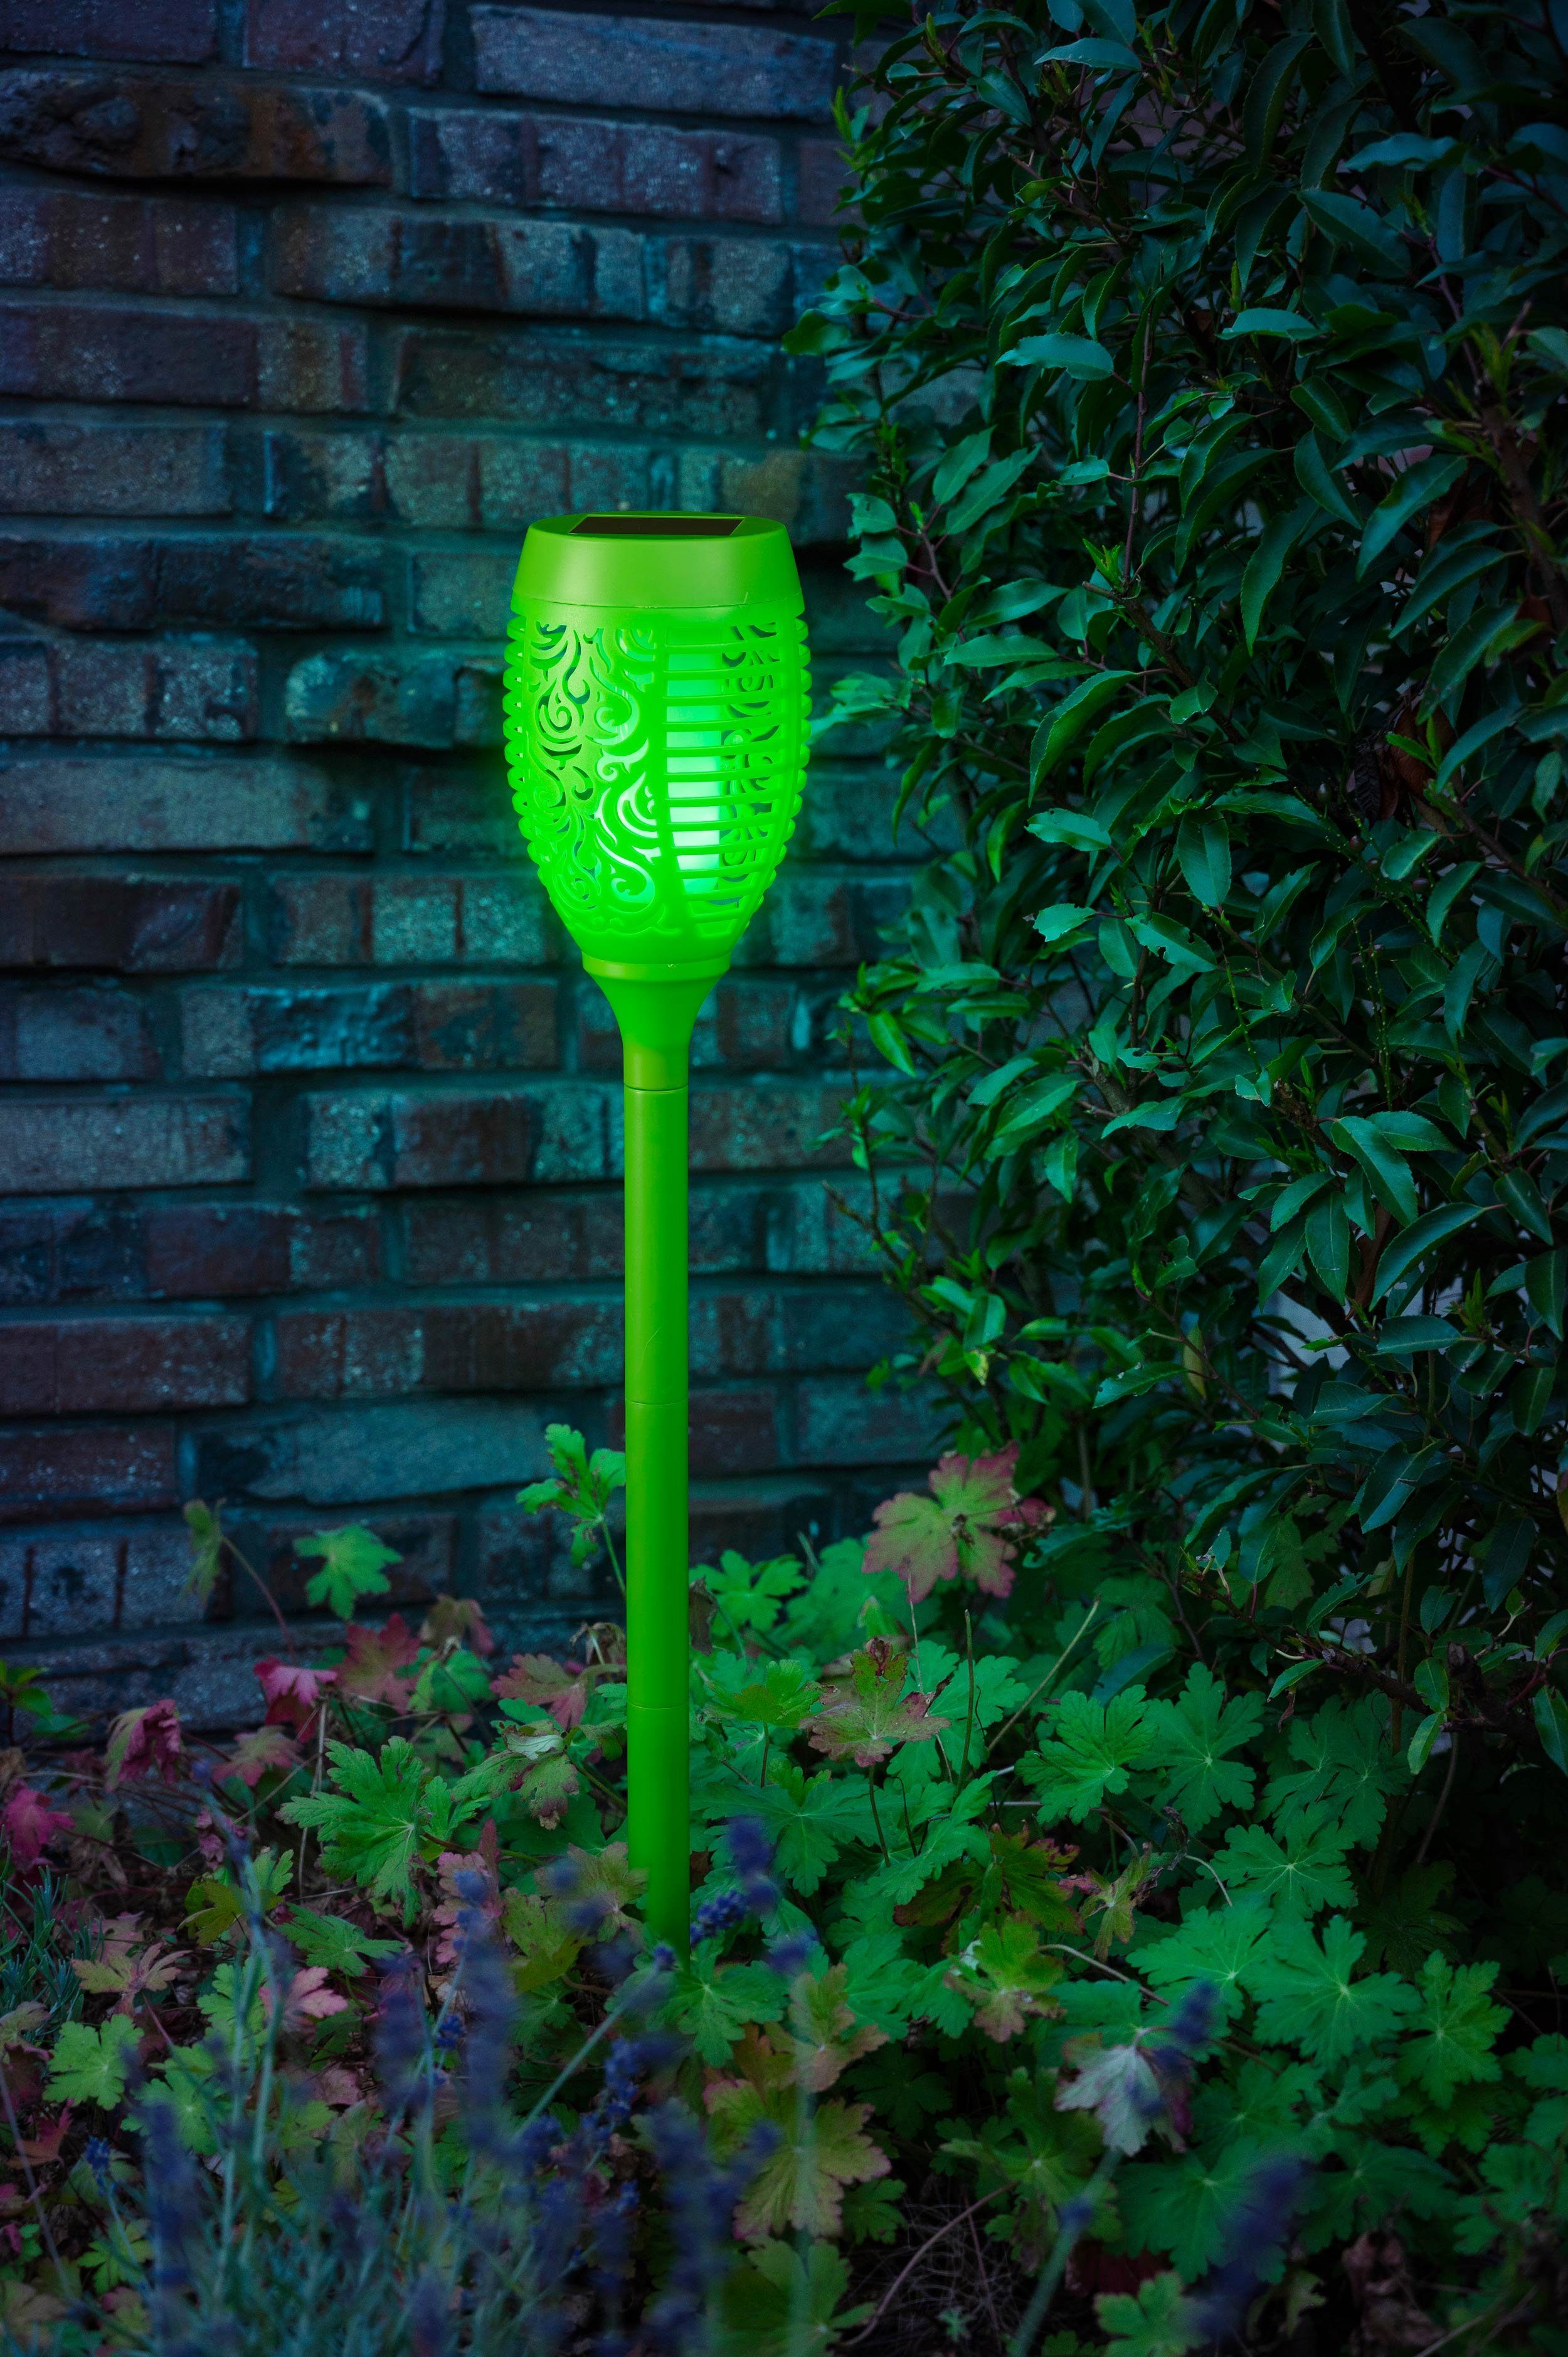 kamelshopping LED Gartenfackel Solarleuchten für Außen, bunte Gartenfackel mit Flammeneffekt, LED fest integriert, bunt, wasserdicht, Dämmerungssensor, ca. 72 cm hoch, bunt grün